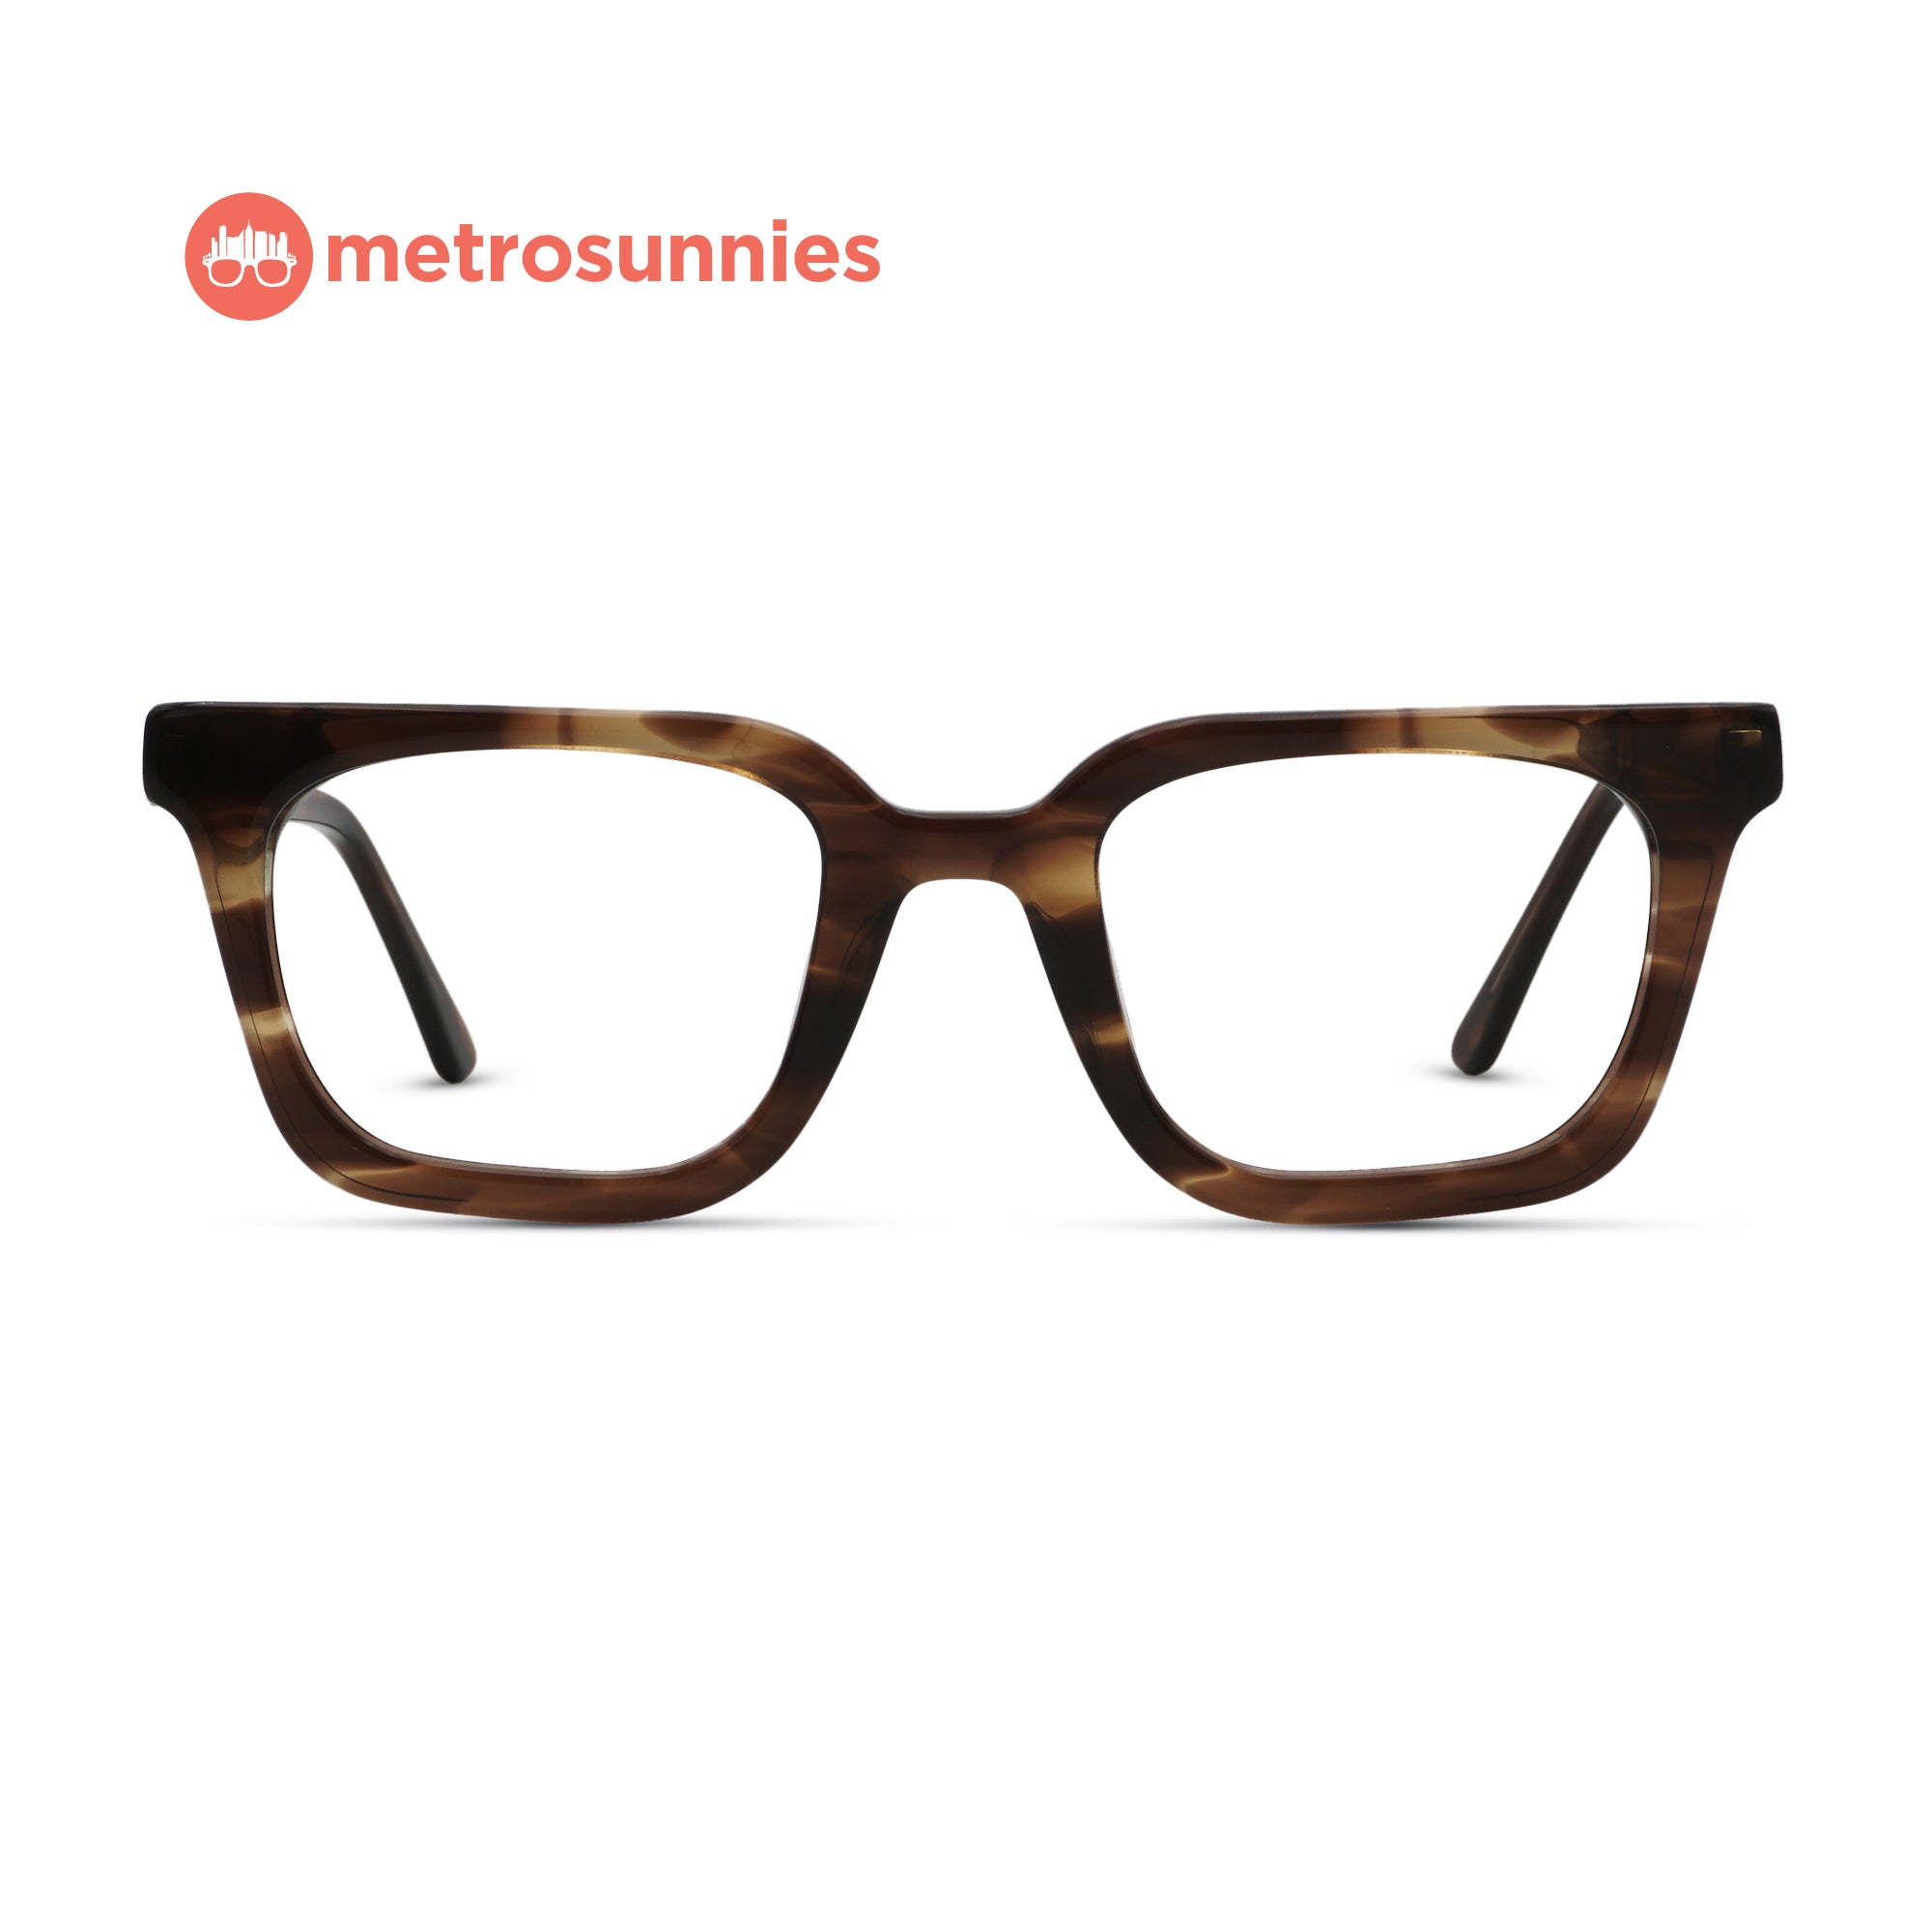 MetroSunnies Cody Specs (Brown) / Handmade Acetate / Replaceable Lens / Eyeglasses